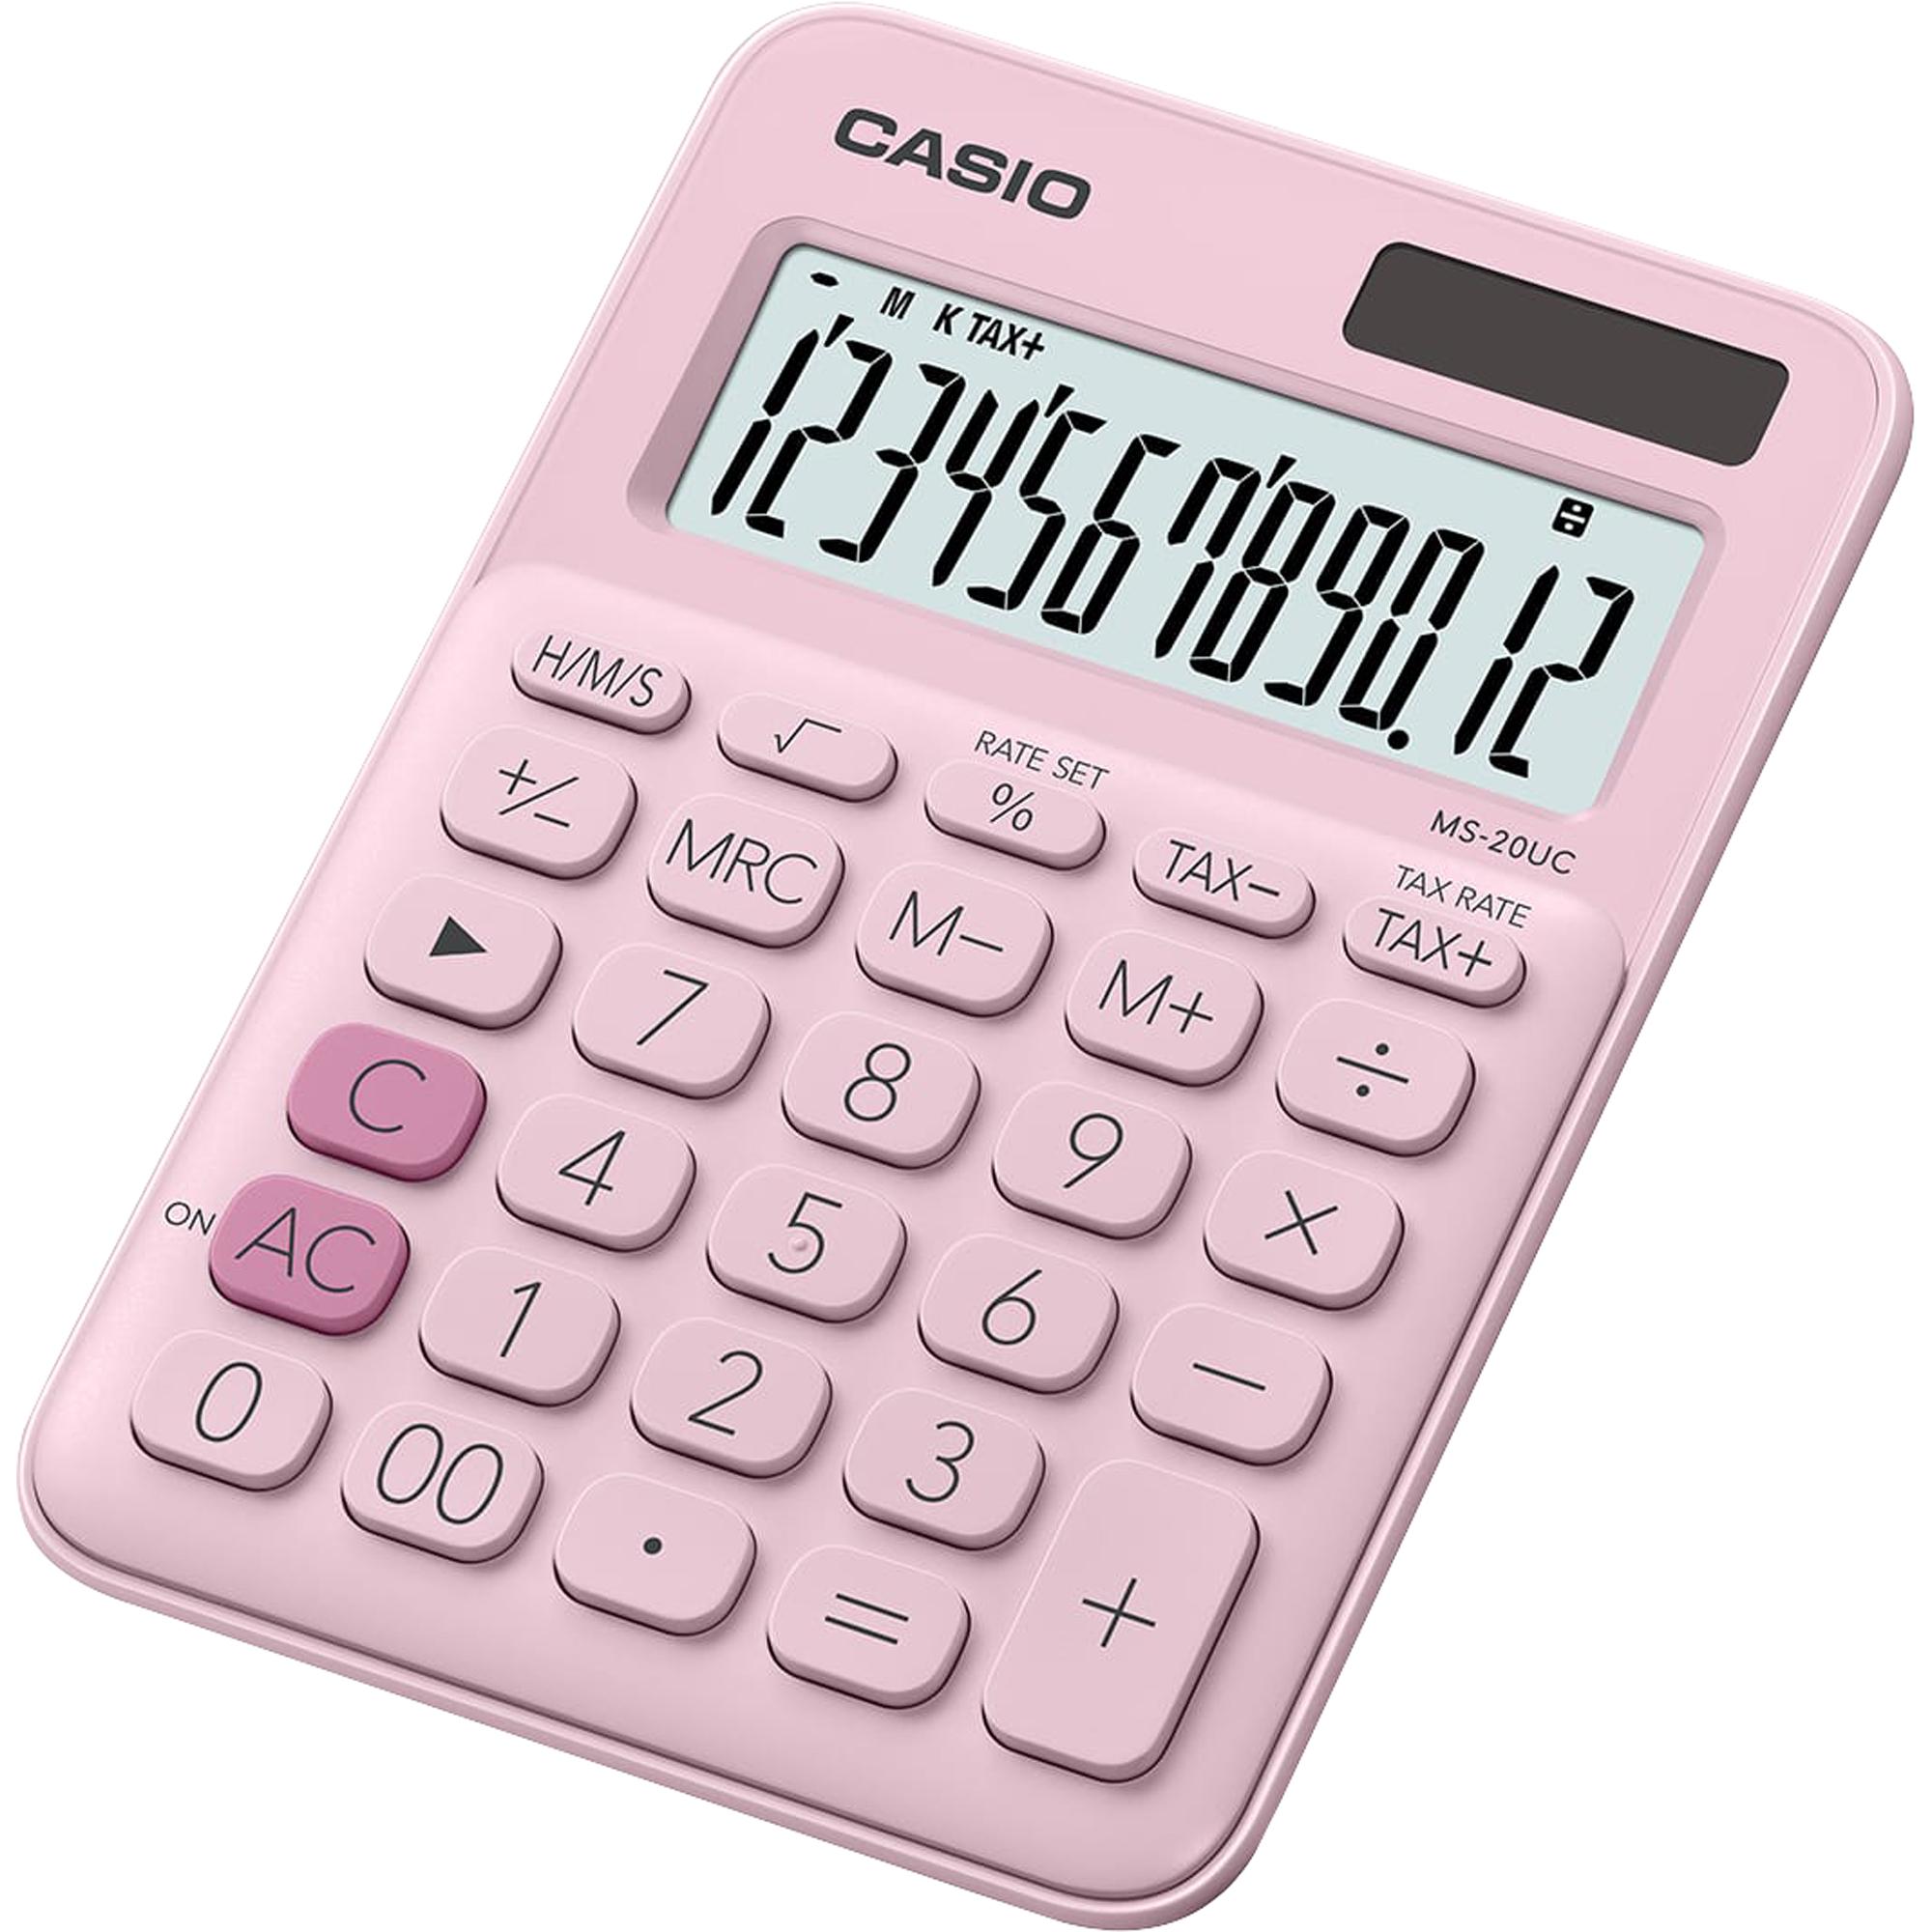 Calculadora de Mesa Casio MS20UC 12 Dígitos Rosa Claro